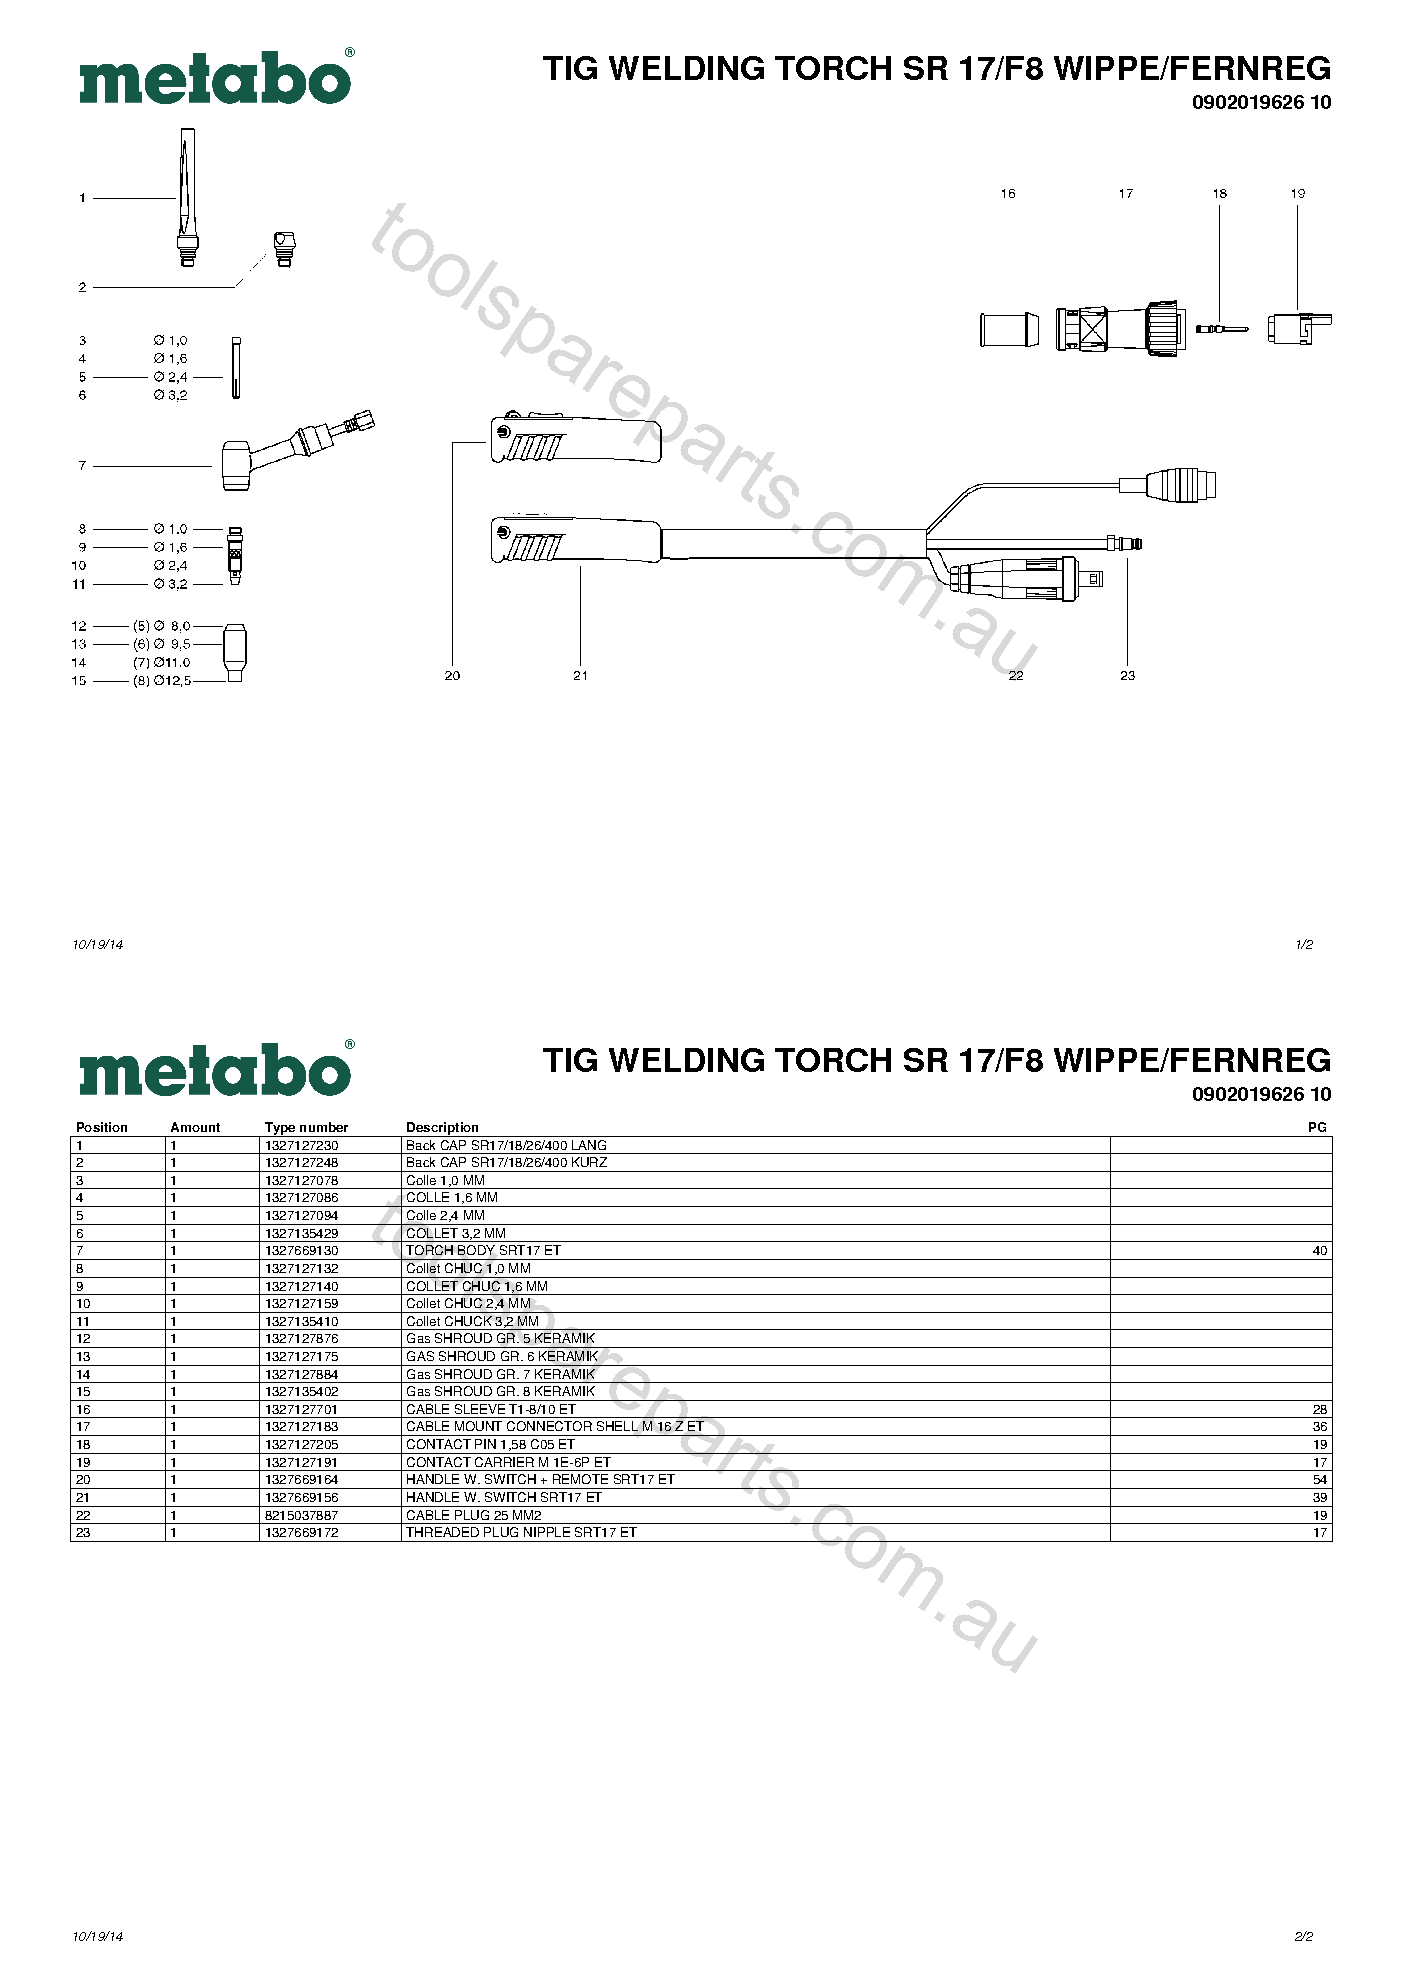 Metabo TIG WELDING TORCH SR 17/F8 WIPPE/FERNREG 0902019626 10  Diagram 1